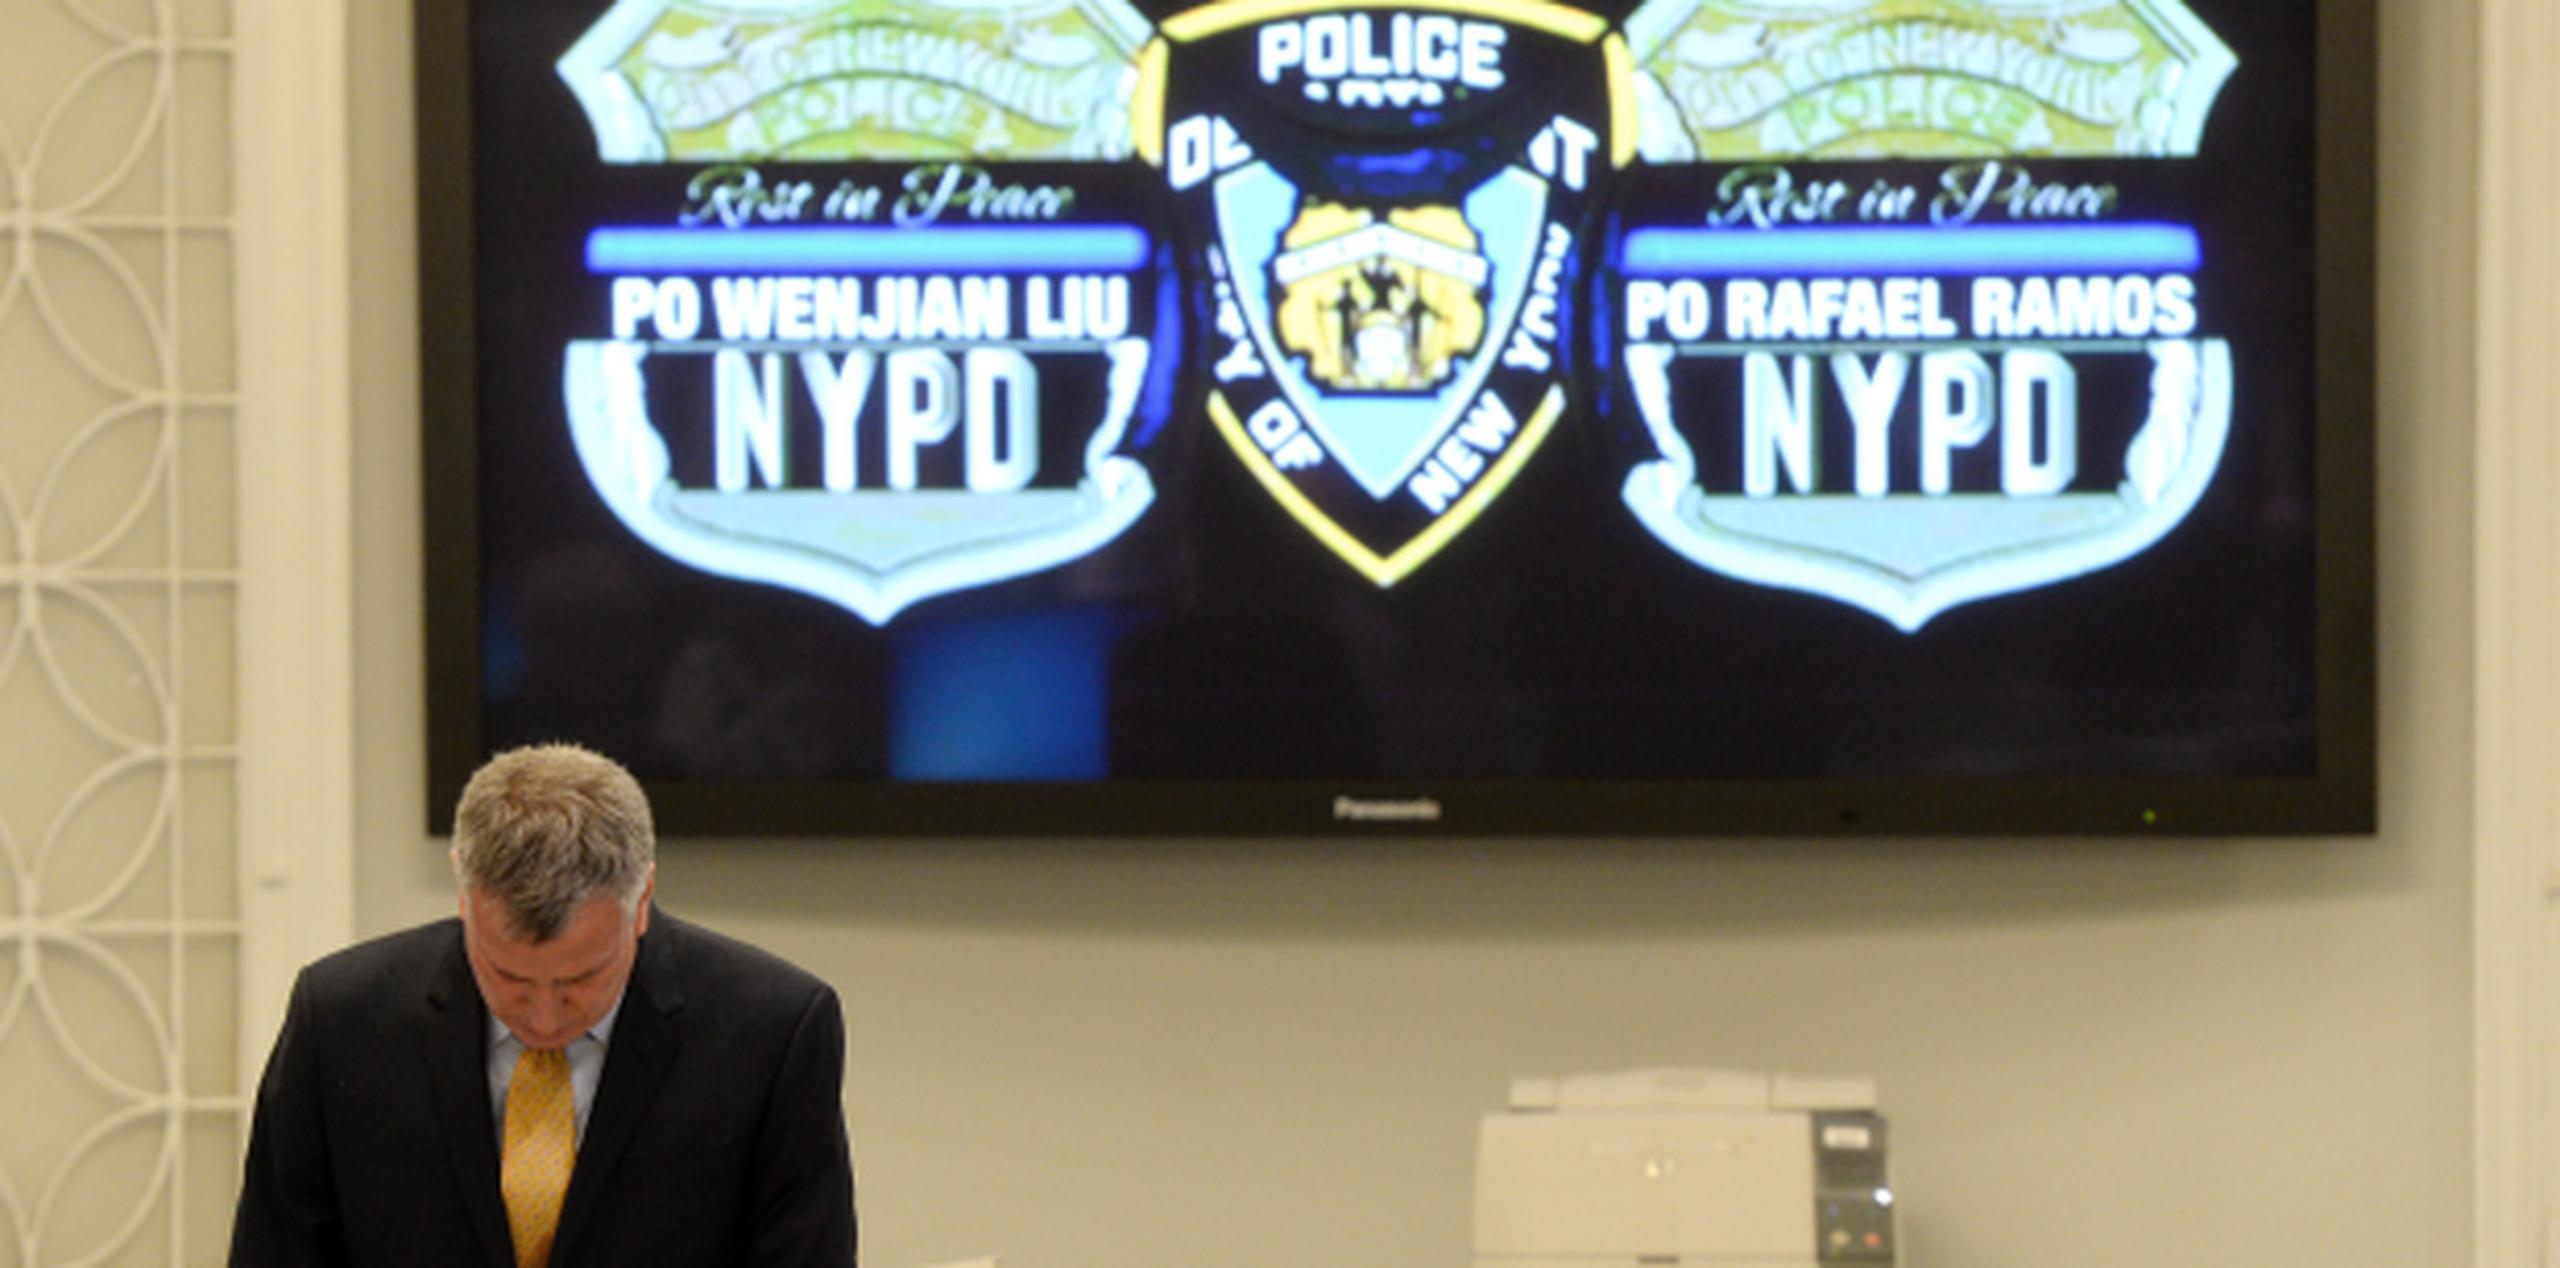 El alcalde de Nueva York, Bill de Blasio, participa en un momento de silencio en memoria de los dos policías asesinados, durante una ceremonia en Nueva York. (EFE)